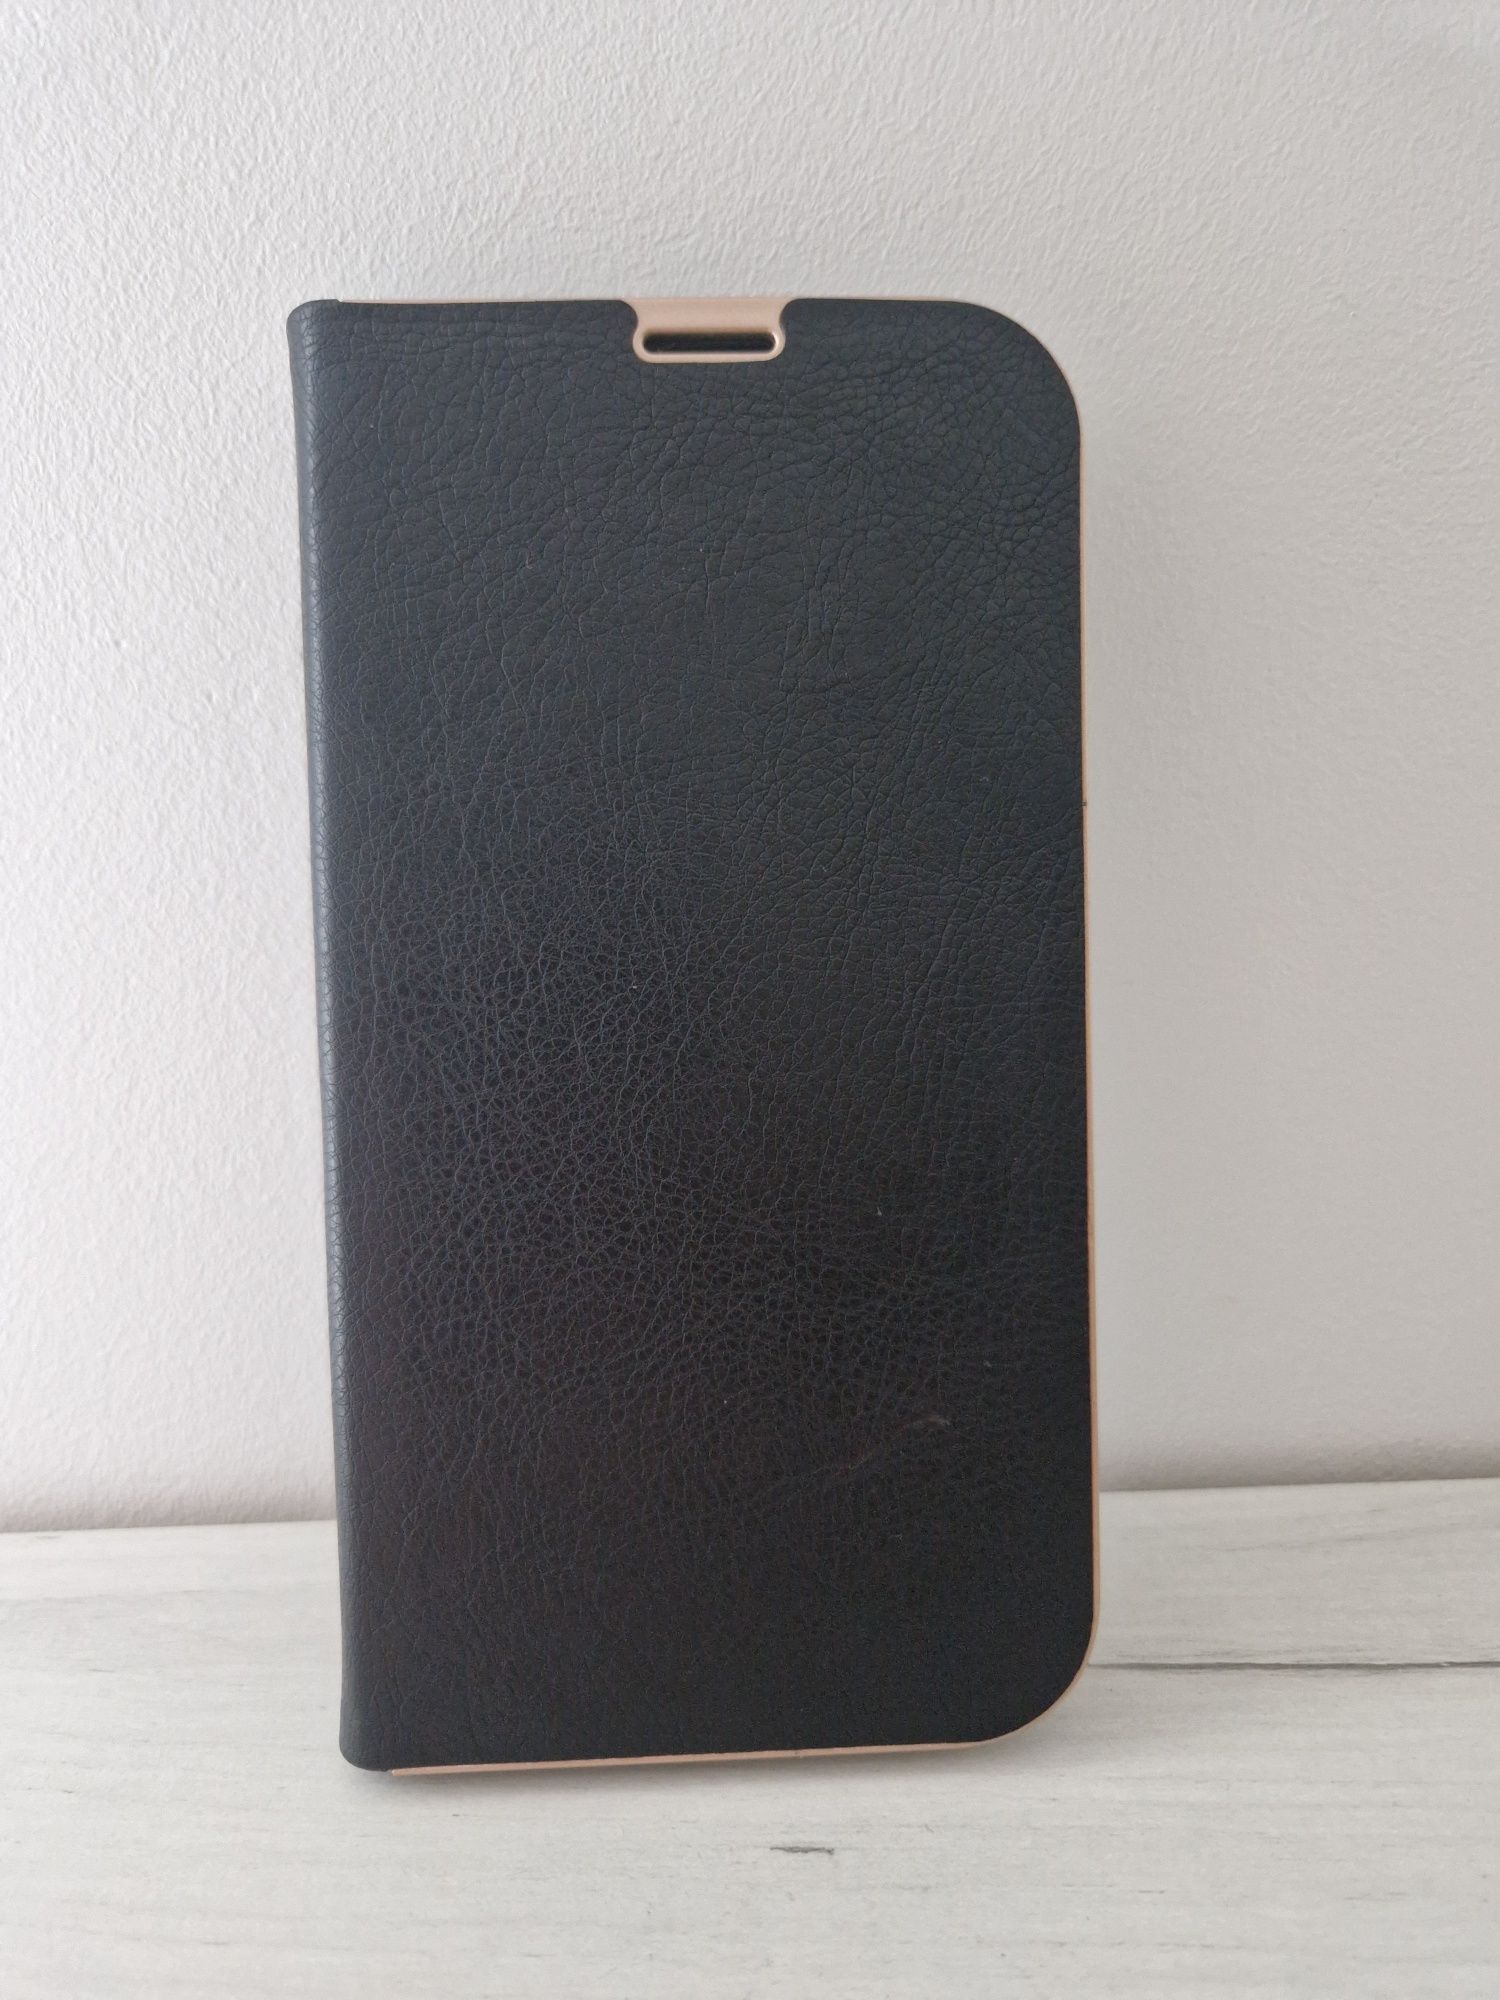 Kabura Book z ramką do Iphone 13 Mini czarna